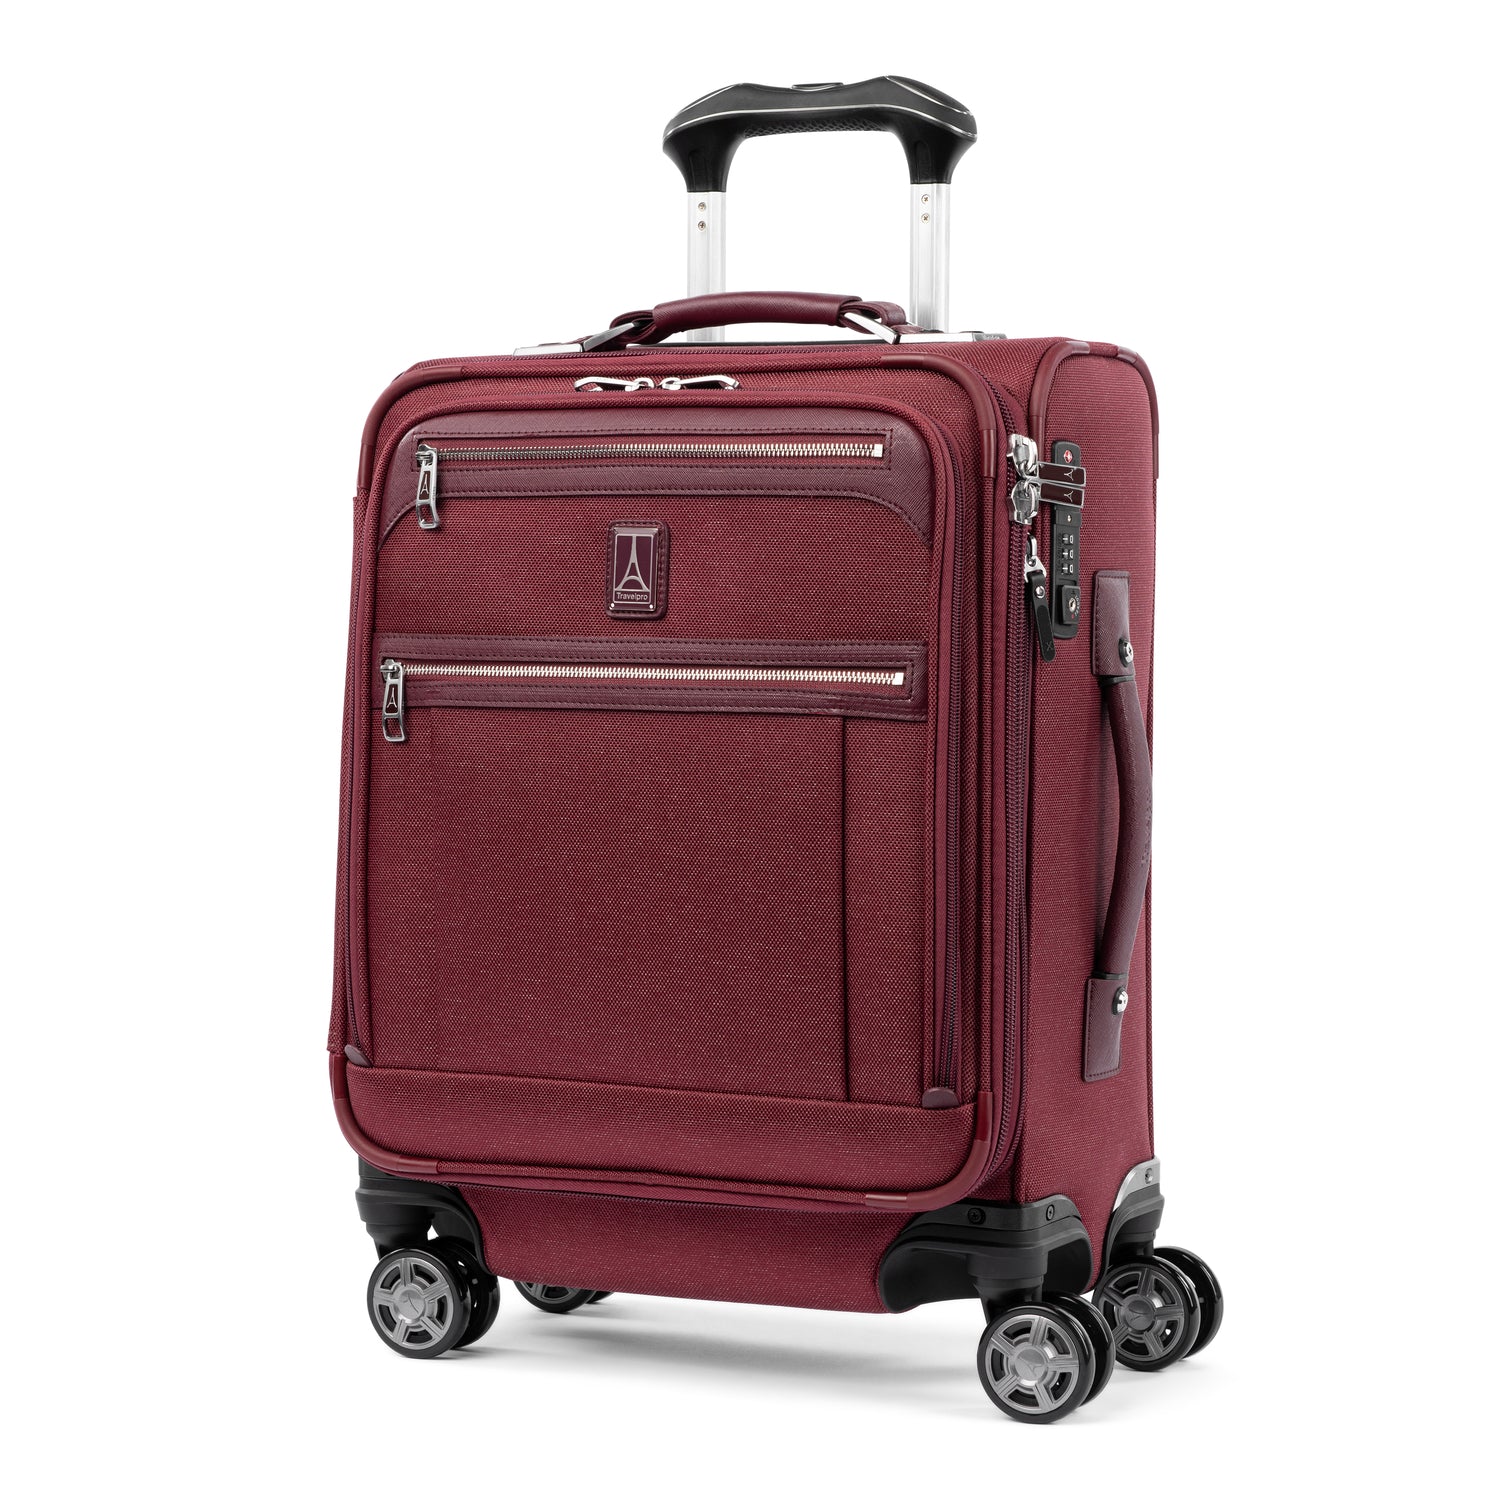 スーツケース 機内持ち込み 大容量 世界のデキるビジネスマンが選ぶ機内持ち込みスーツケース Trav...